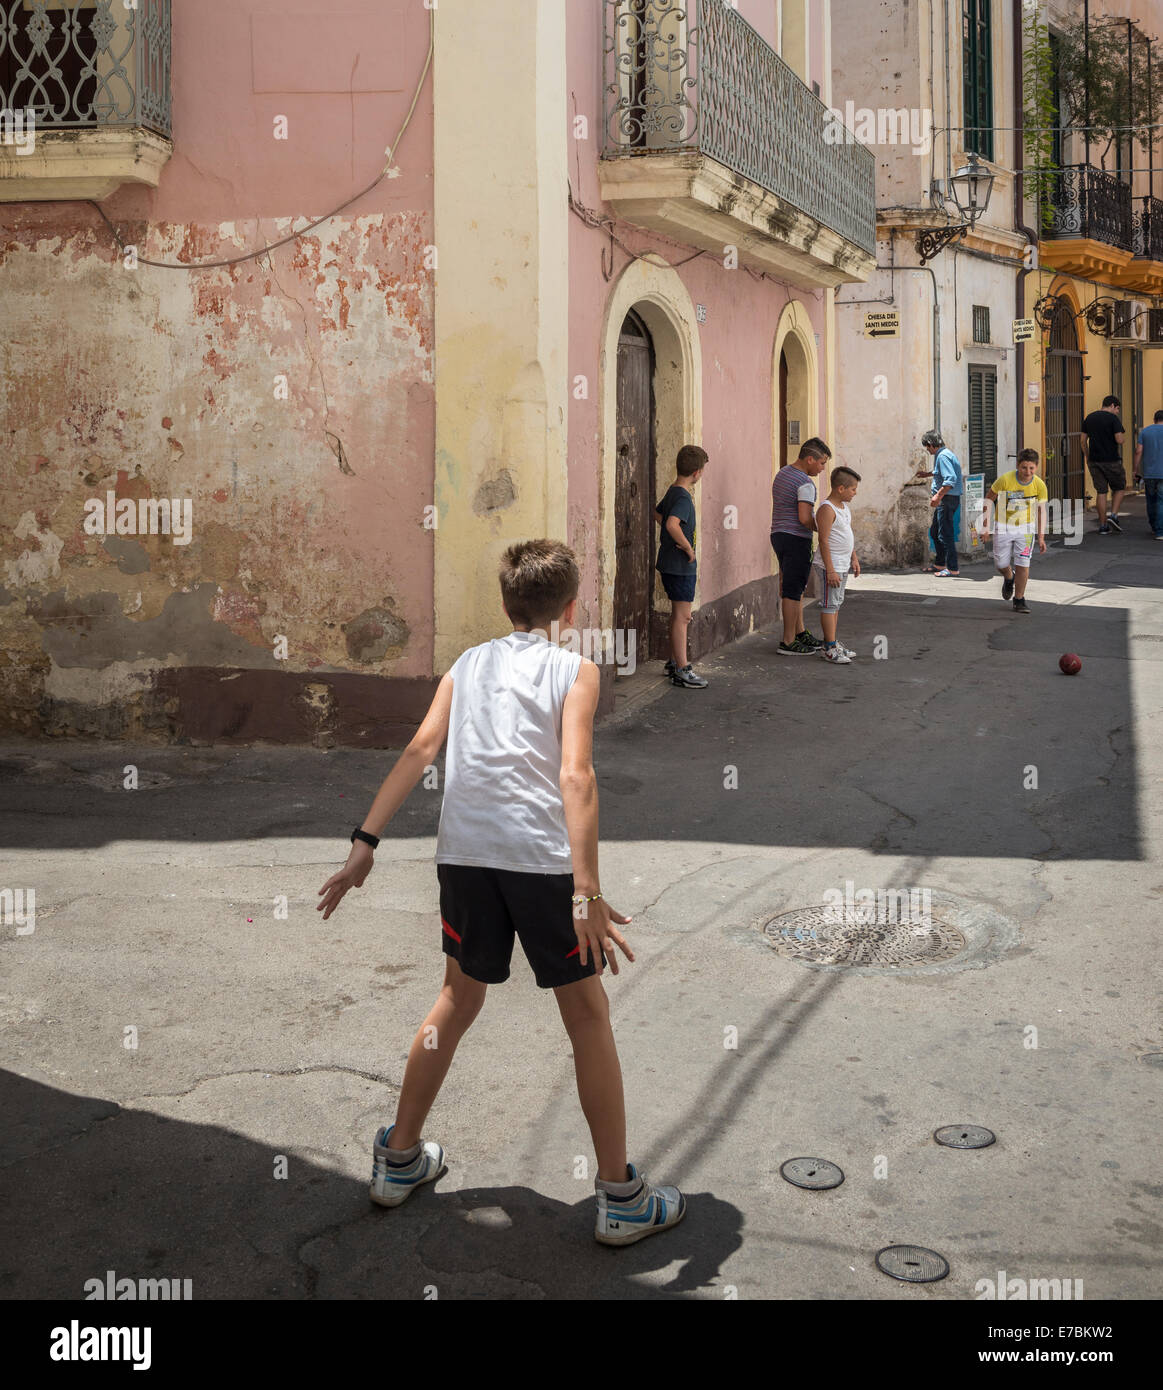 Bambini che giocano a calcio per strada nella vecchia città di pescatori di Gallipoli, Puglia, Italia meridionale. Foto Stock